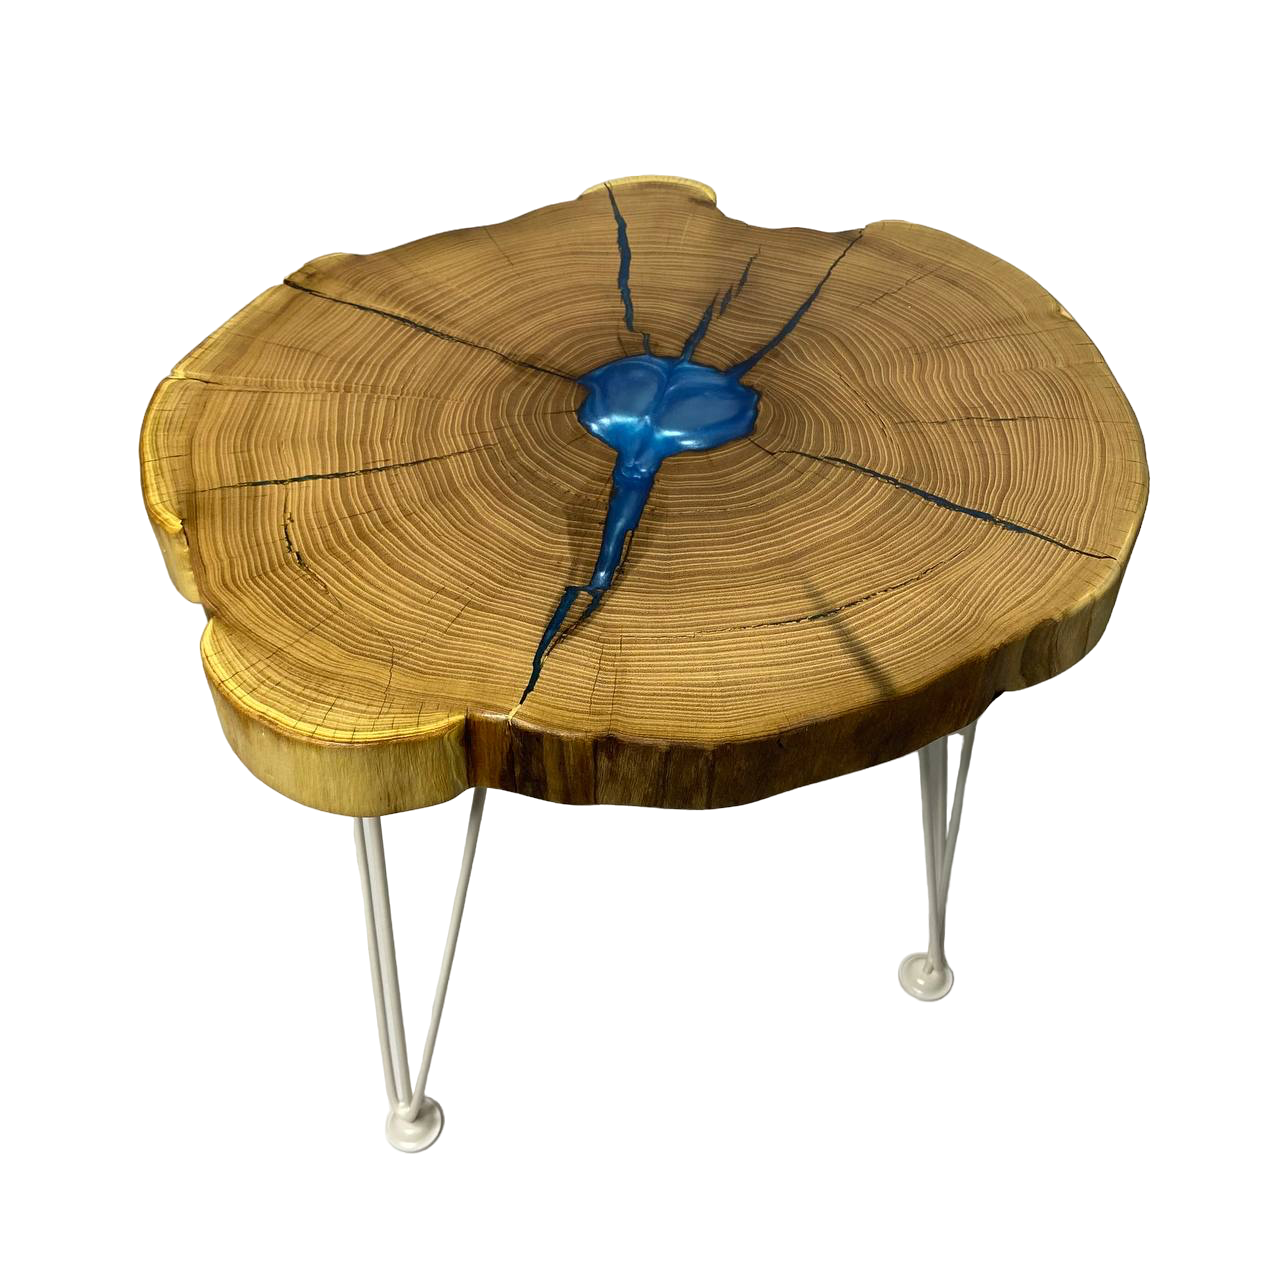 Журнальный стол из торцевого спила дерева Thunder cloud model 1 48х52х45 см